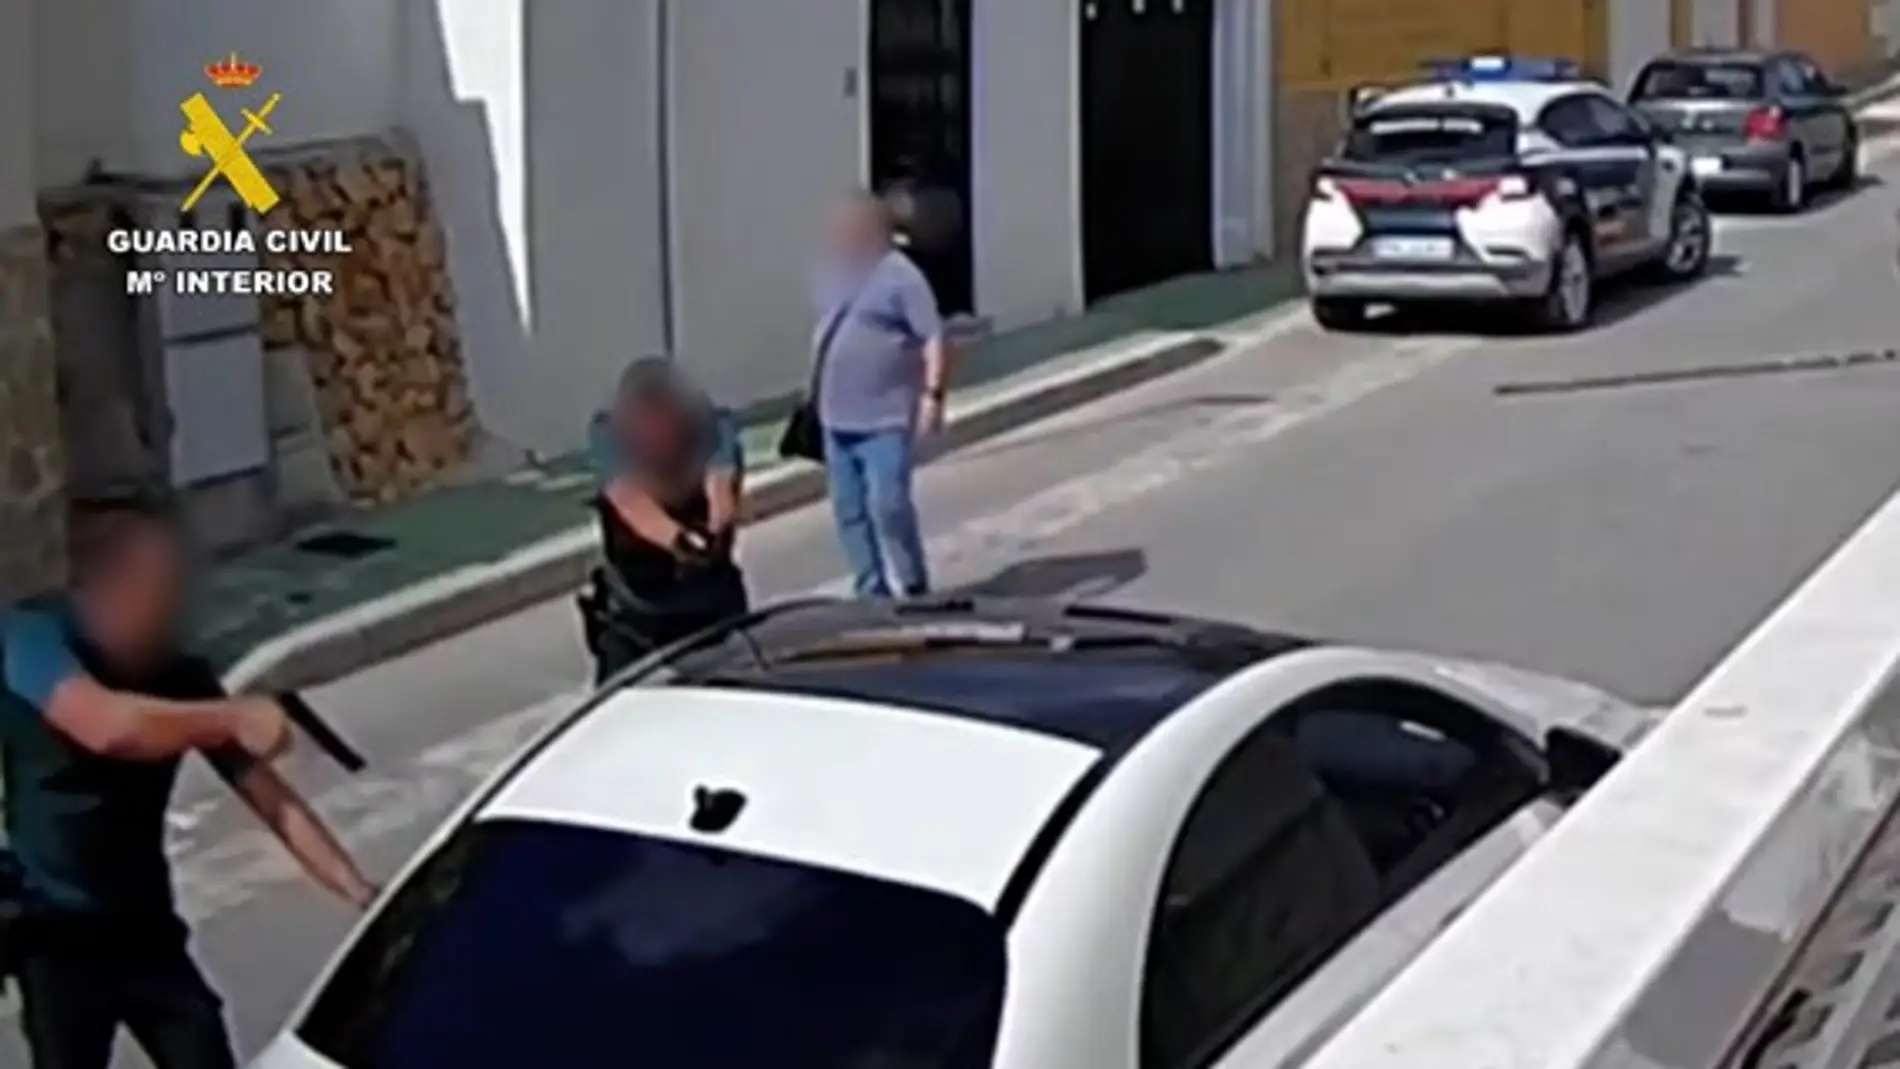 La Guardia Civil detiene en Callosa d'En Sarrià a un hombre buscado por la policía francesa